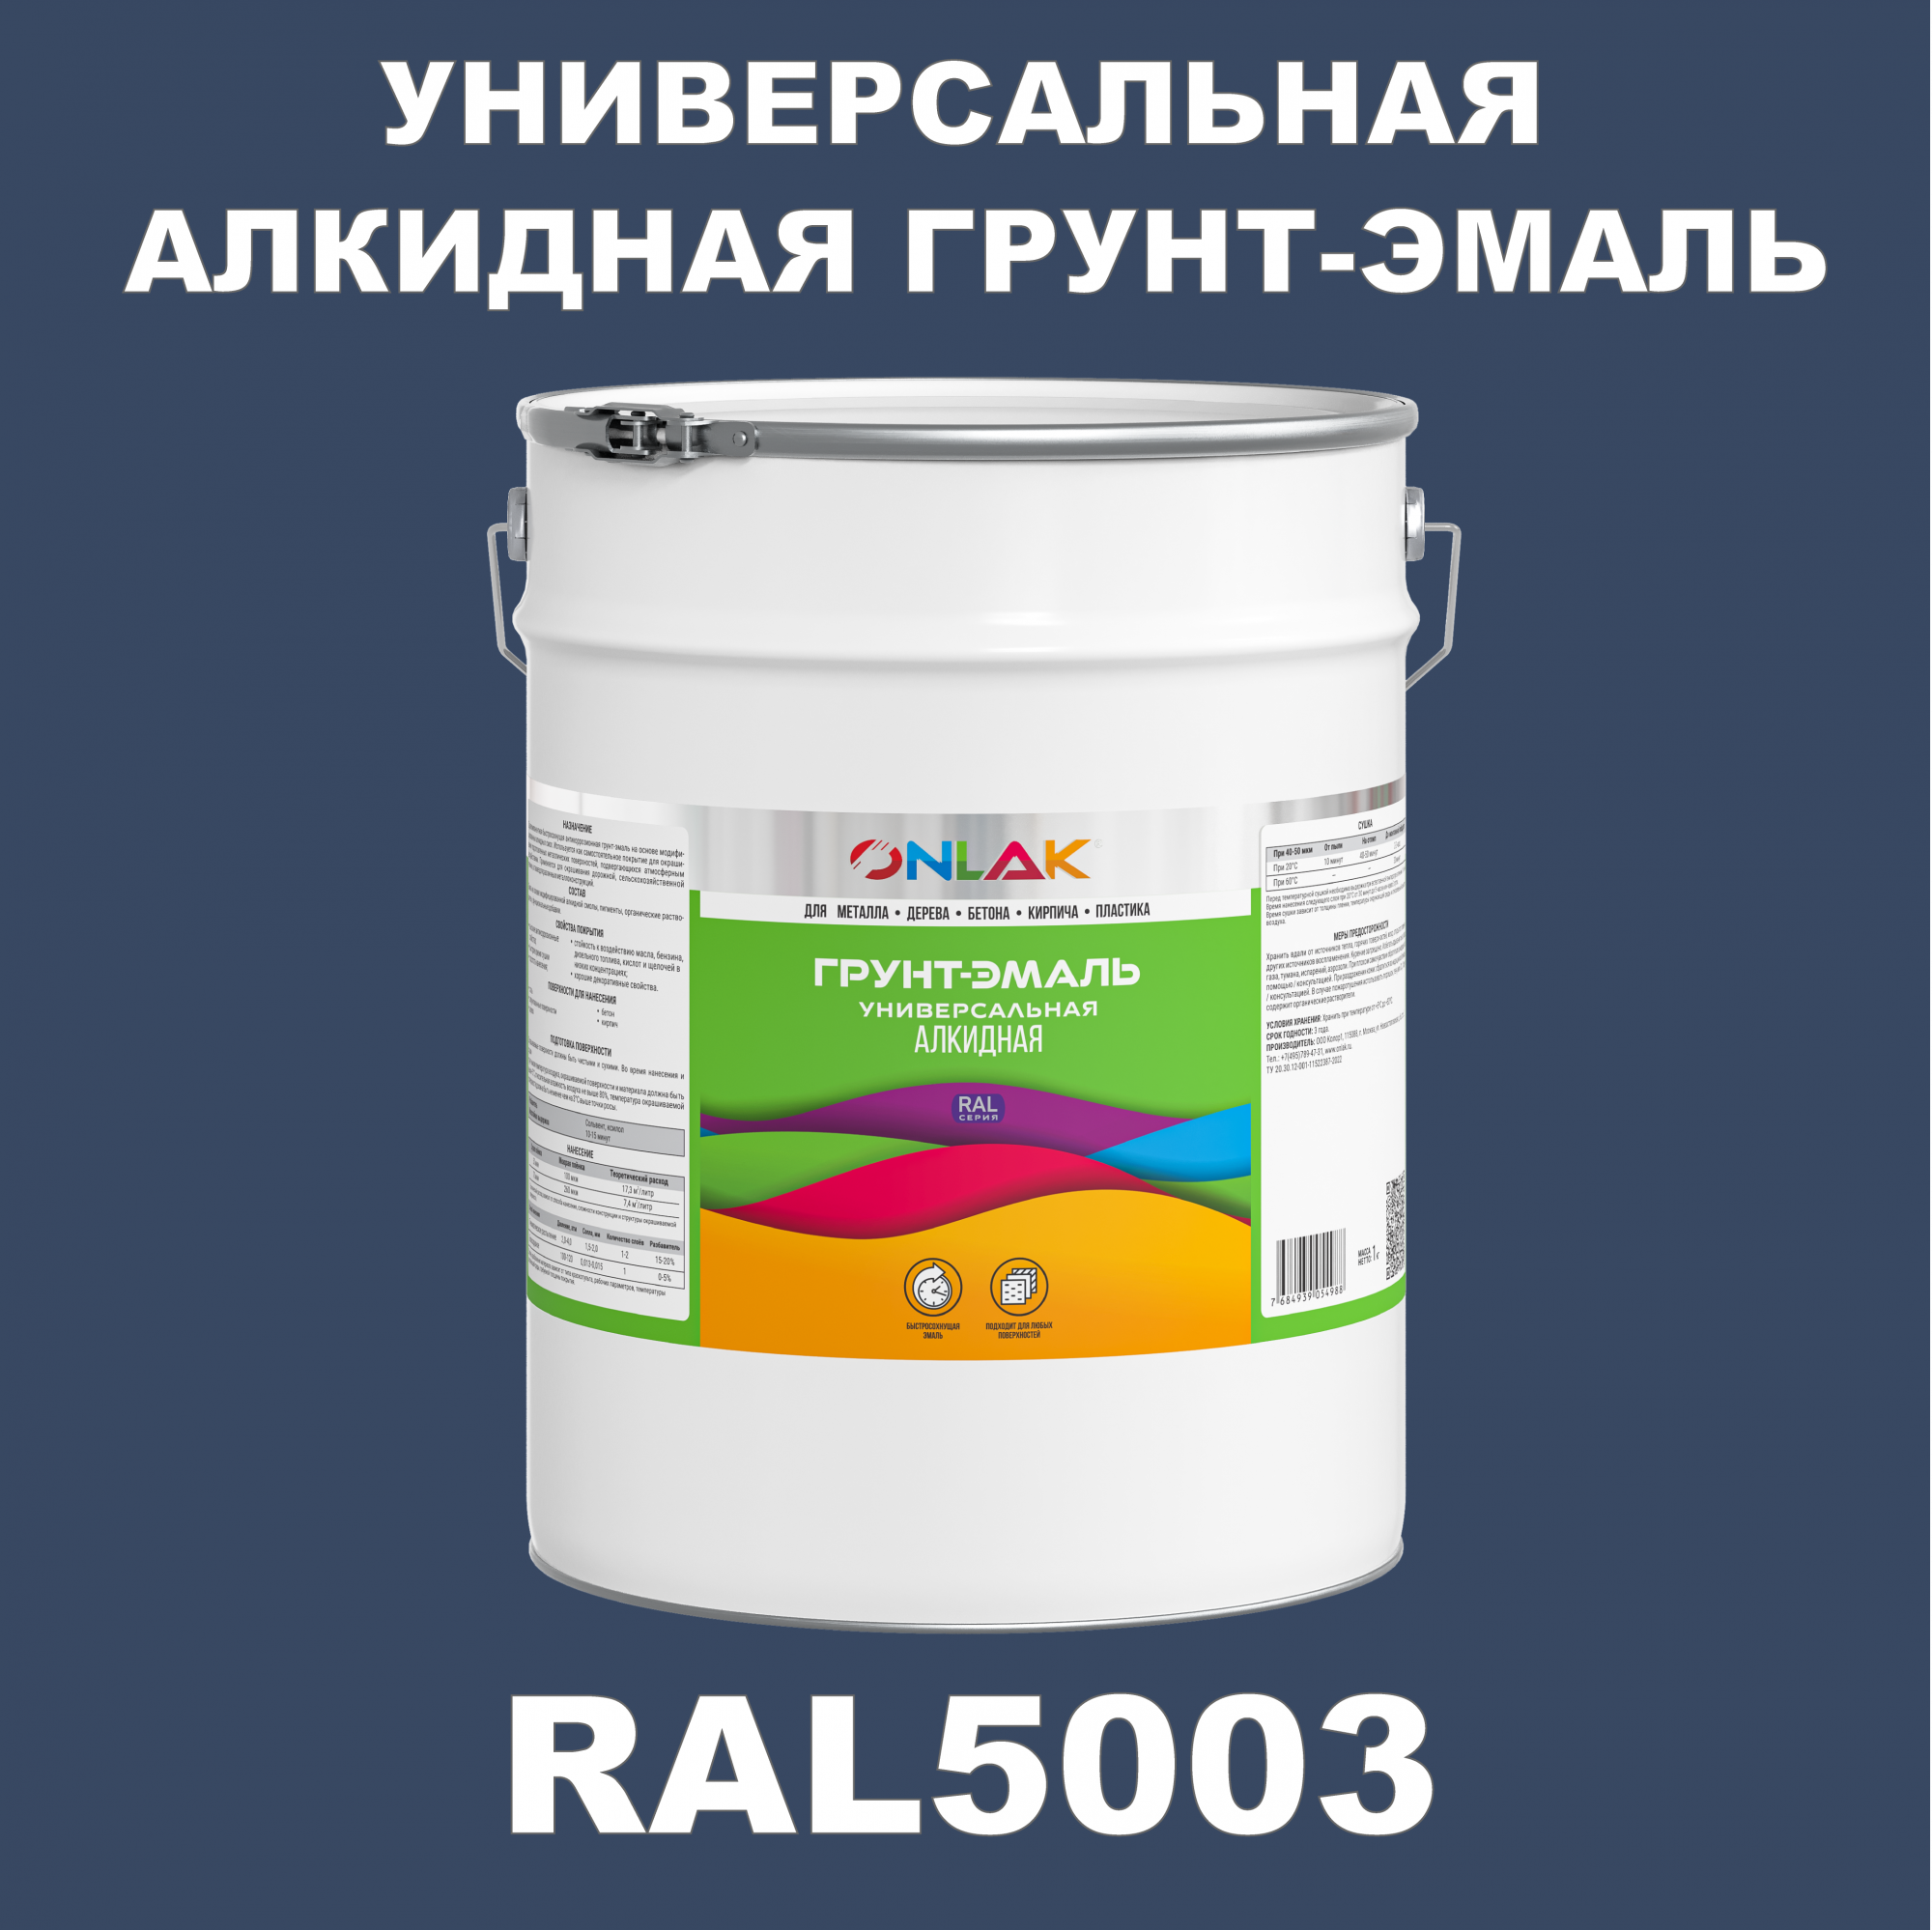 Грунт-эмаль ONLAK 1К RAL5003 антикоррозионная алкидная по металлу по ржавчине 20 кг грунт эмаль neomid по ржавчине быстросохнущая алкидная серая 0 9 кг